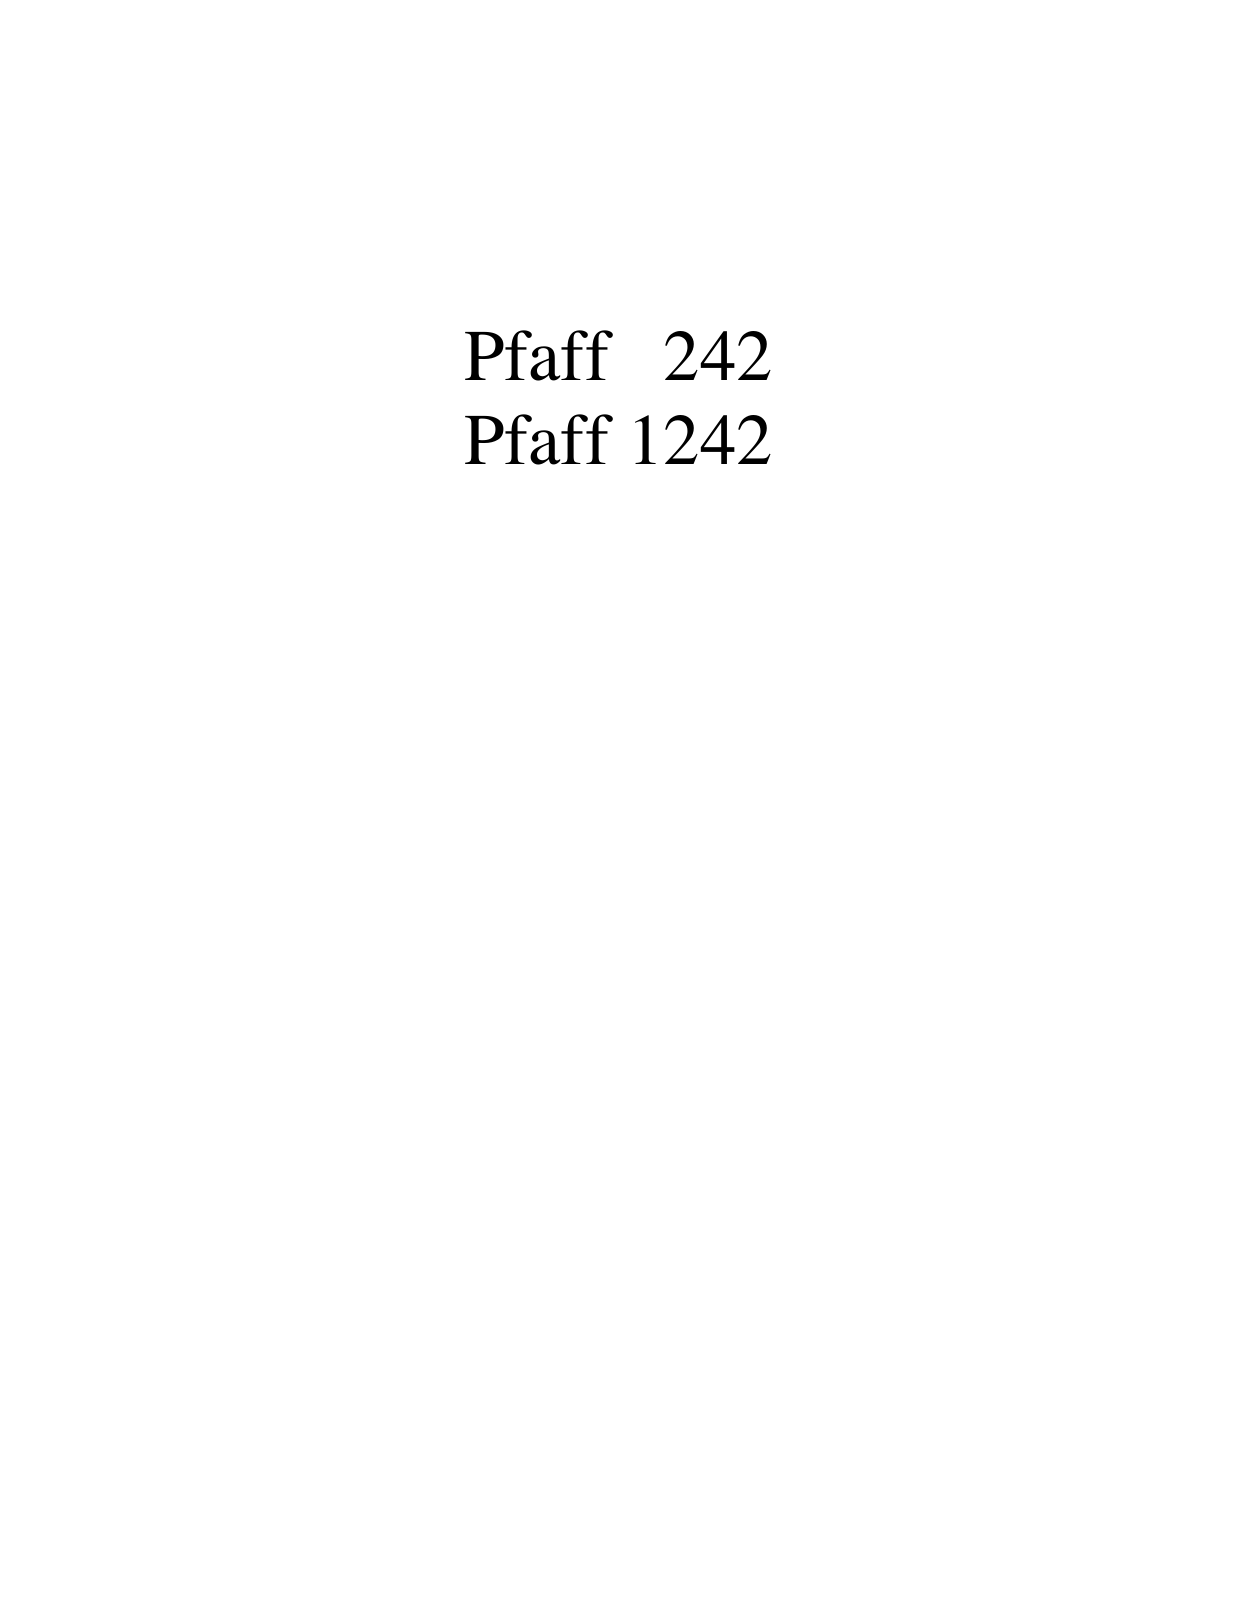 PFAFF 242, 1242 Parts List